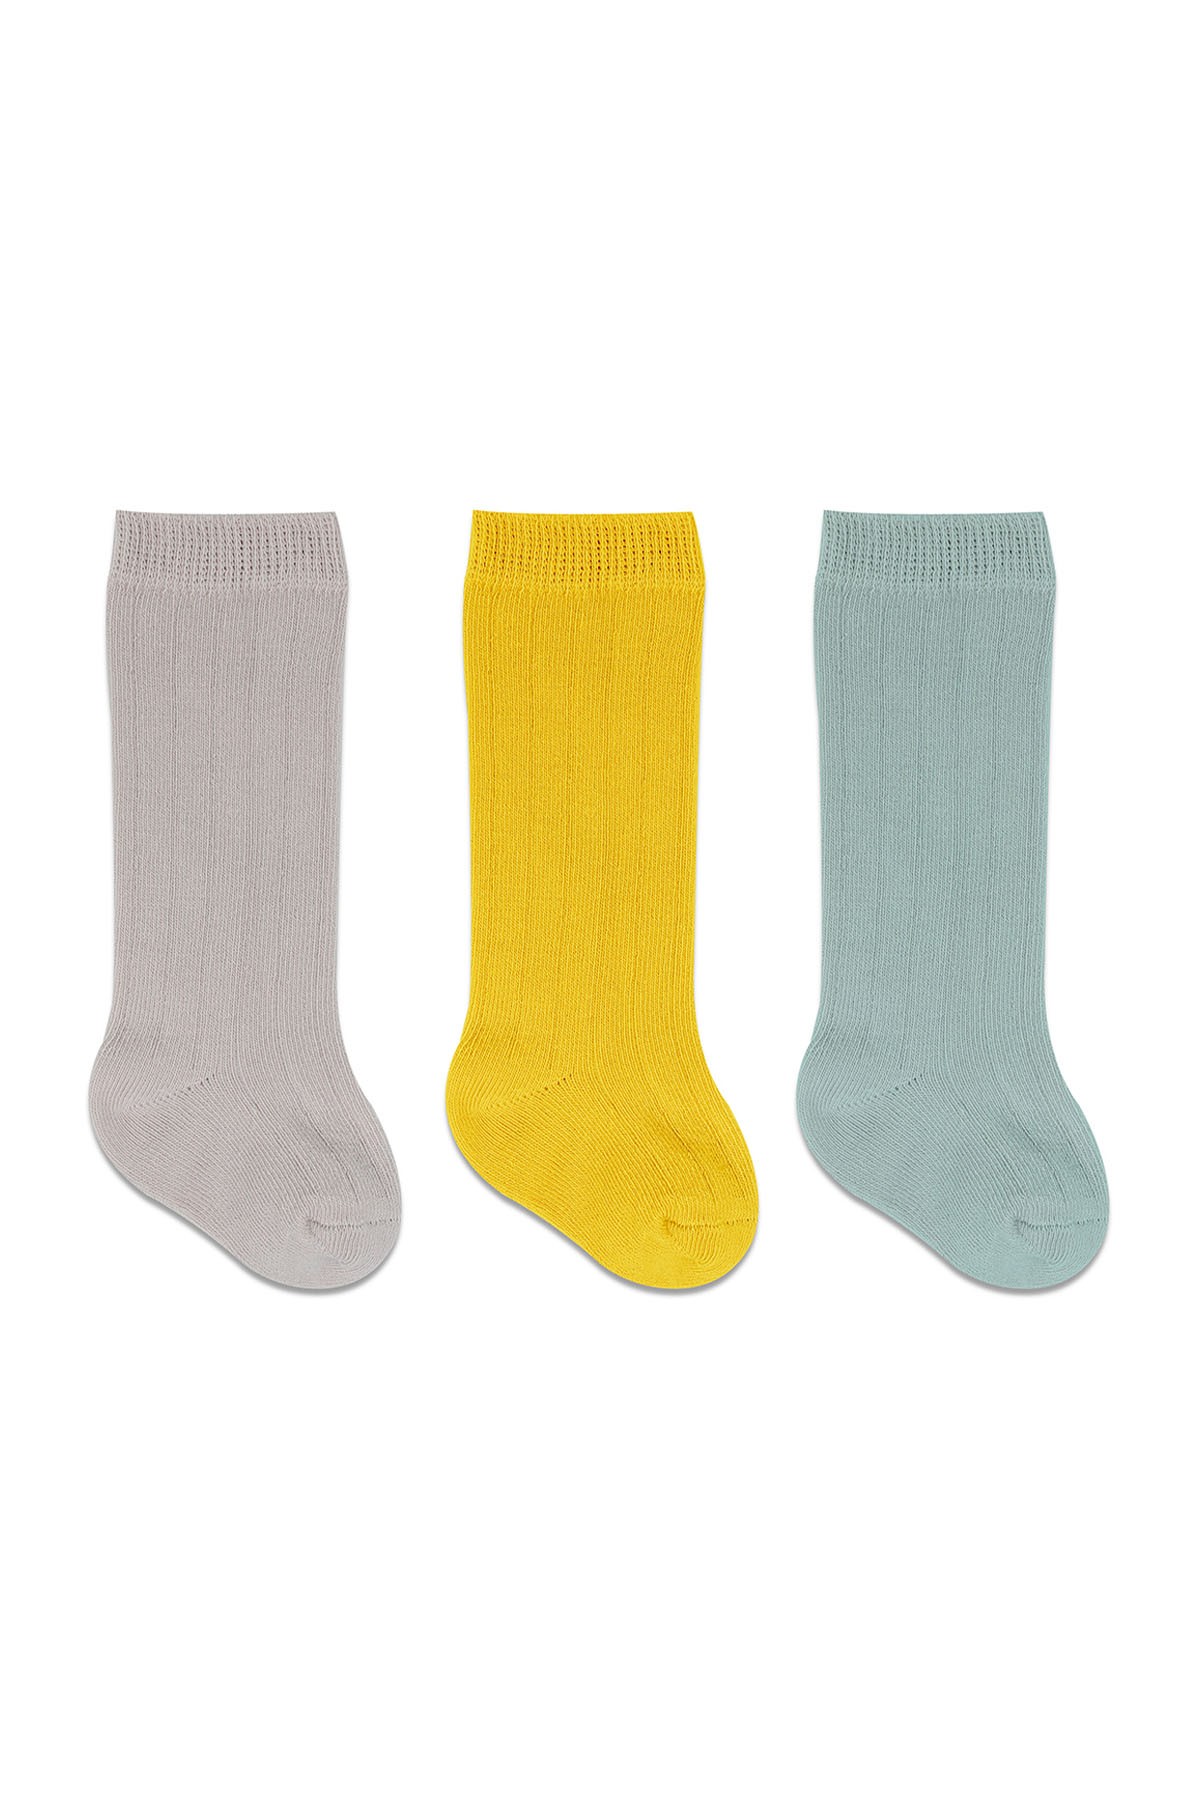 Bistyle 3'lü Dizaltı Bebek Çorabı Sarı Çok Renkli